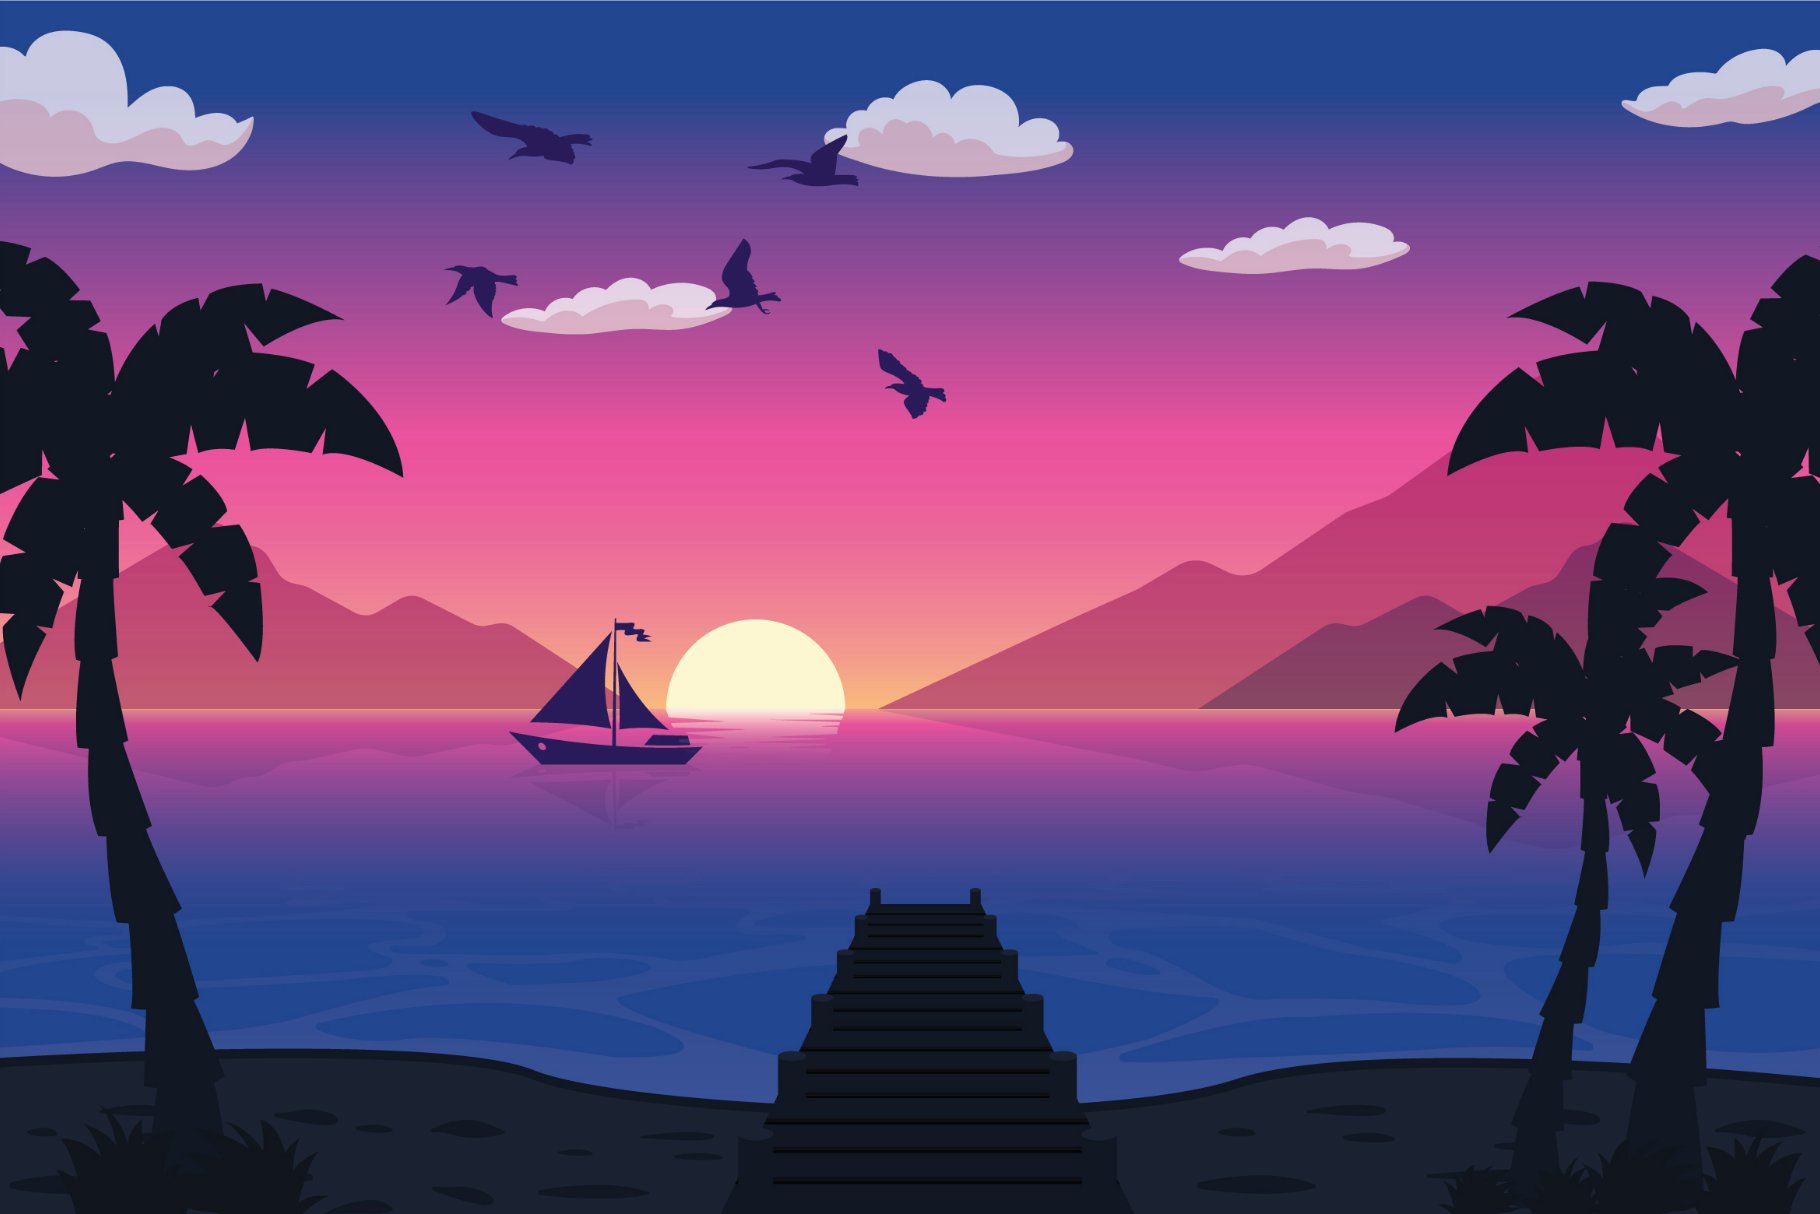 Lonely Boat - Landscape Illustration cover image.